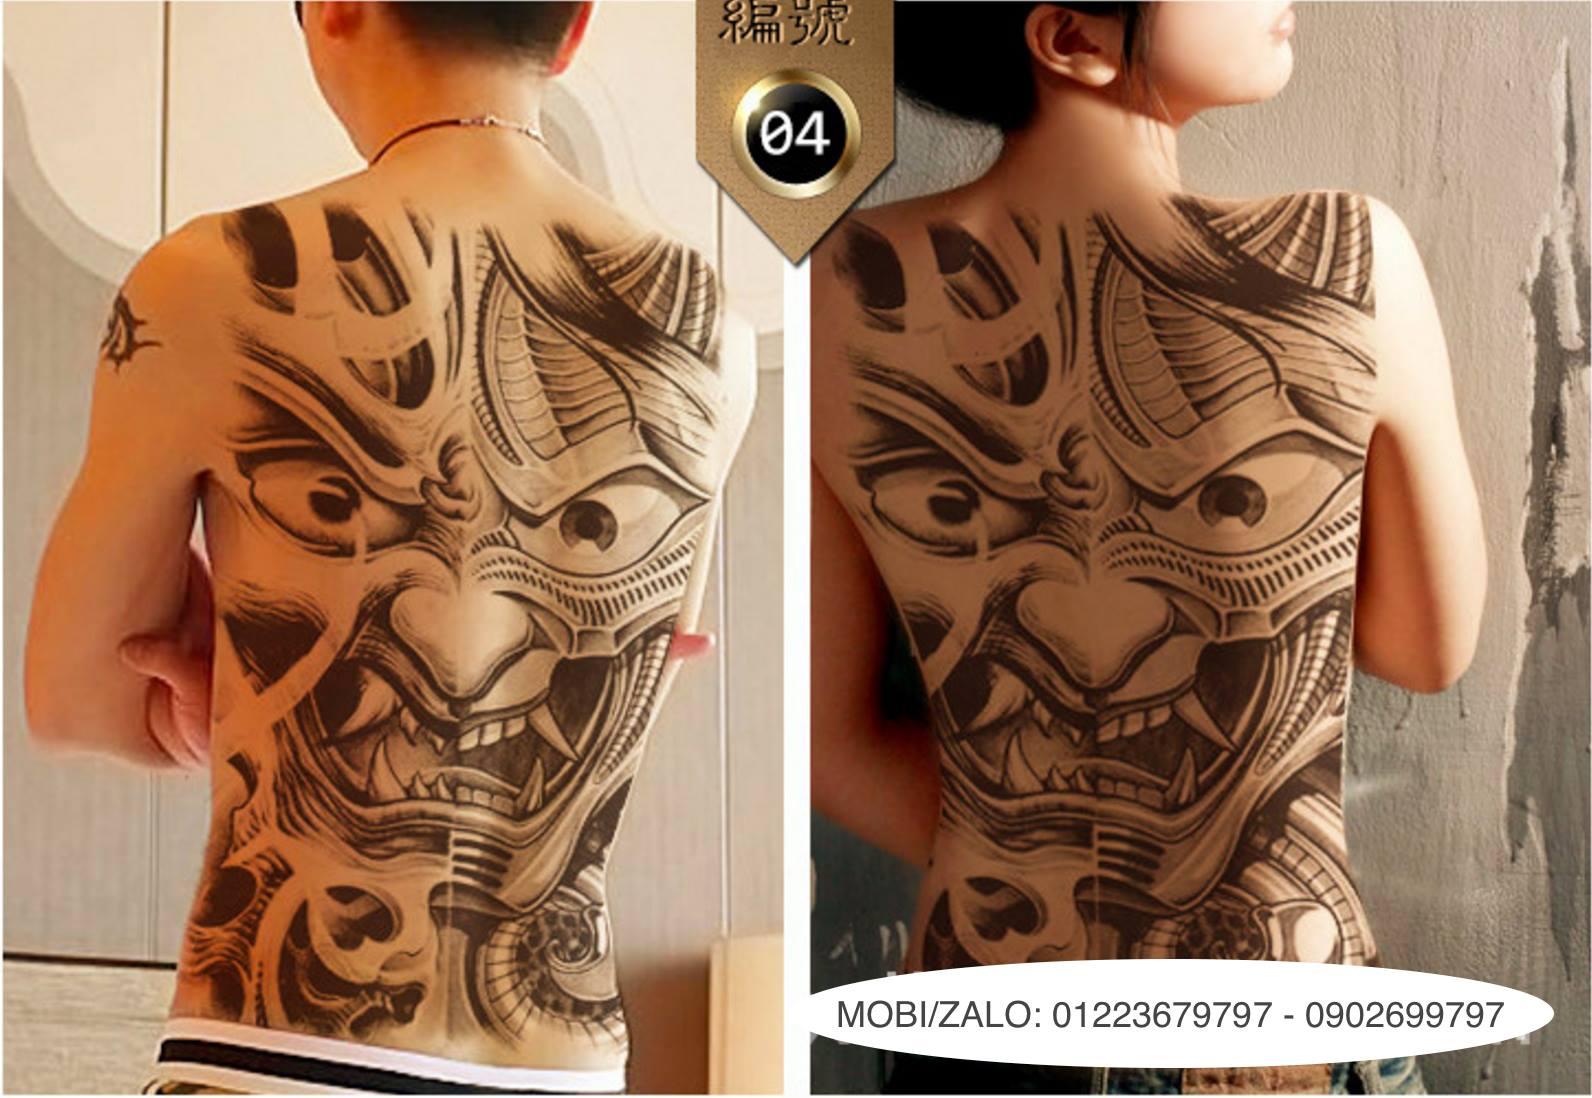 HCMHình xăm dán nữ tatoo chữ cá tính kích thước 6 x 10 cm  hình xăm đẹp  dành cho nữ  Lazadavn